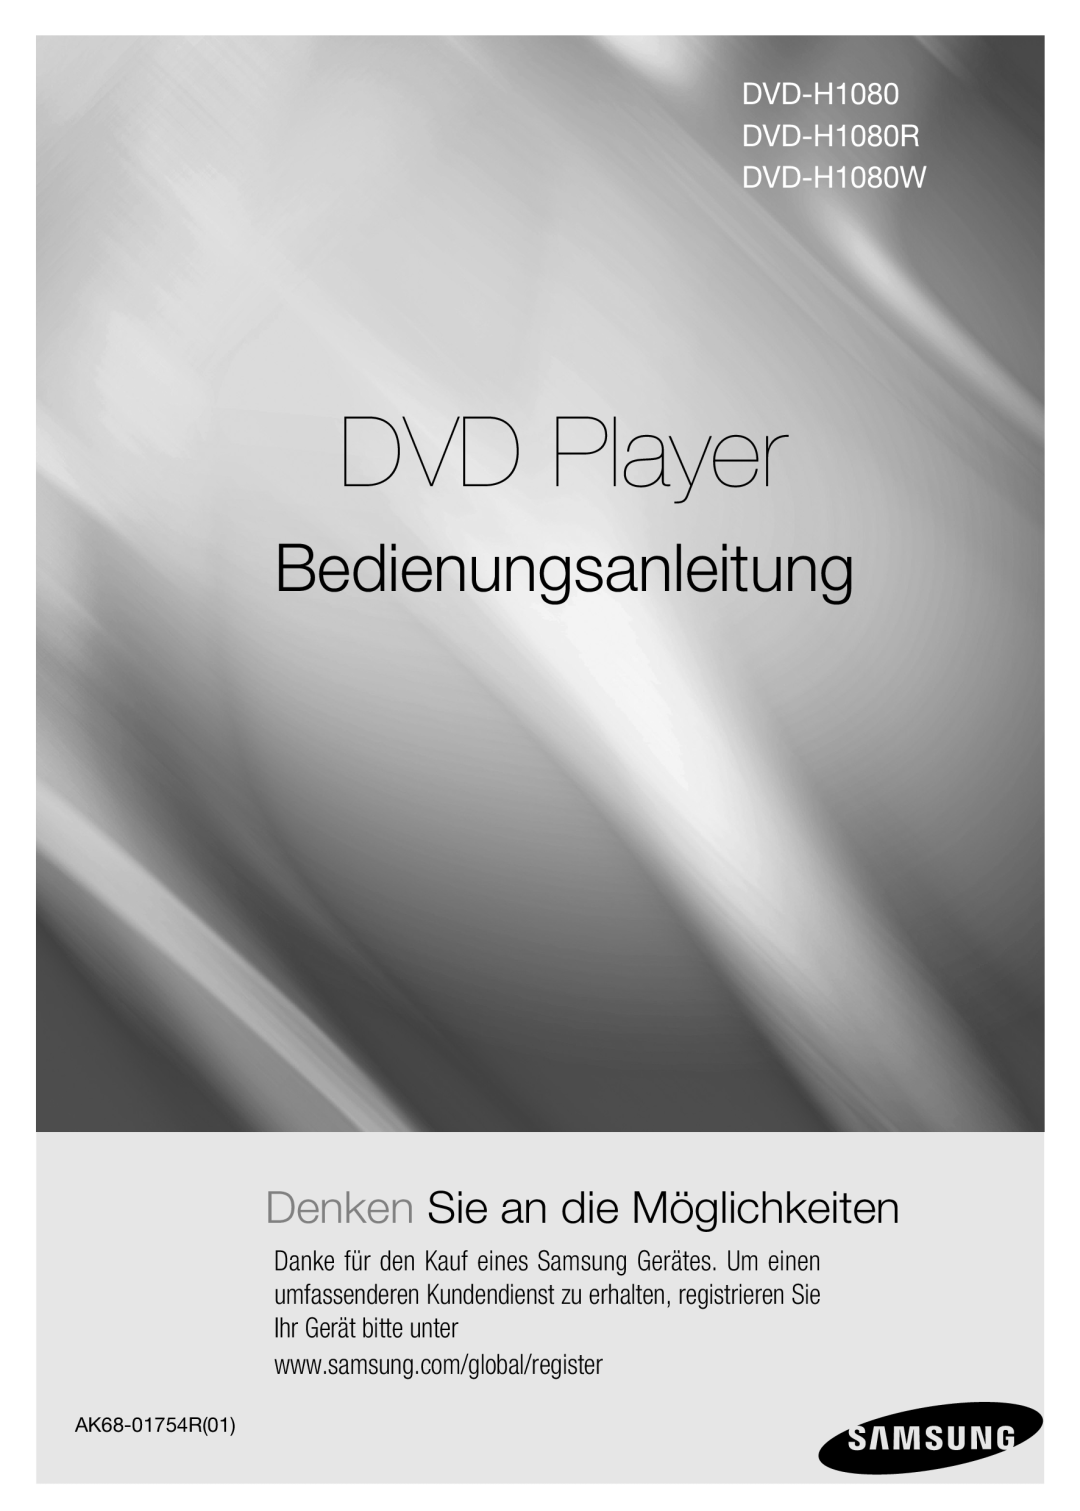 Samsung DVD-H1080W/EDC, DVD-H1080/EDC manual DVD Player, Bedienungsanleitung, DVD-H1080 DVD-H1080R DVD-H1080W 